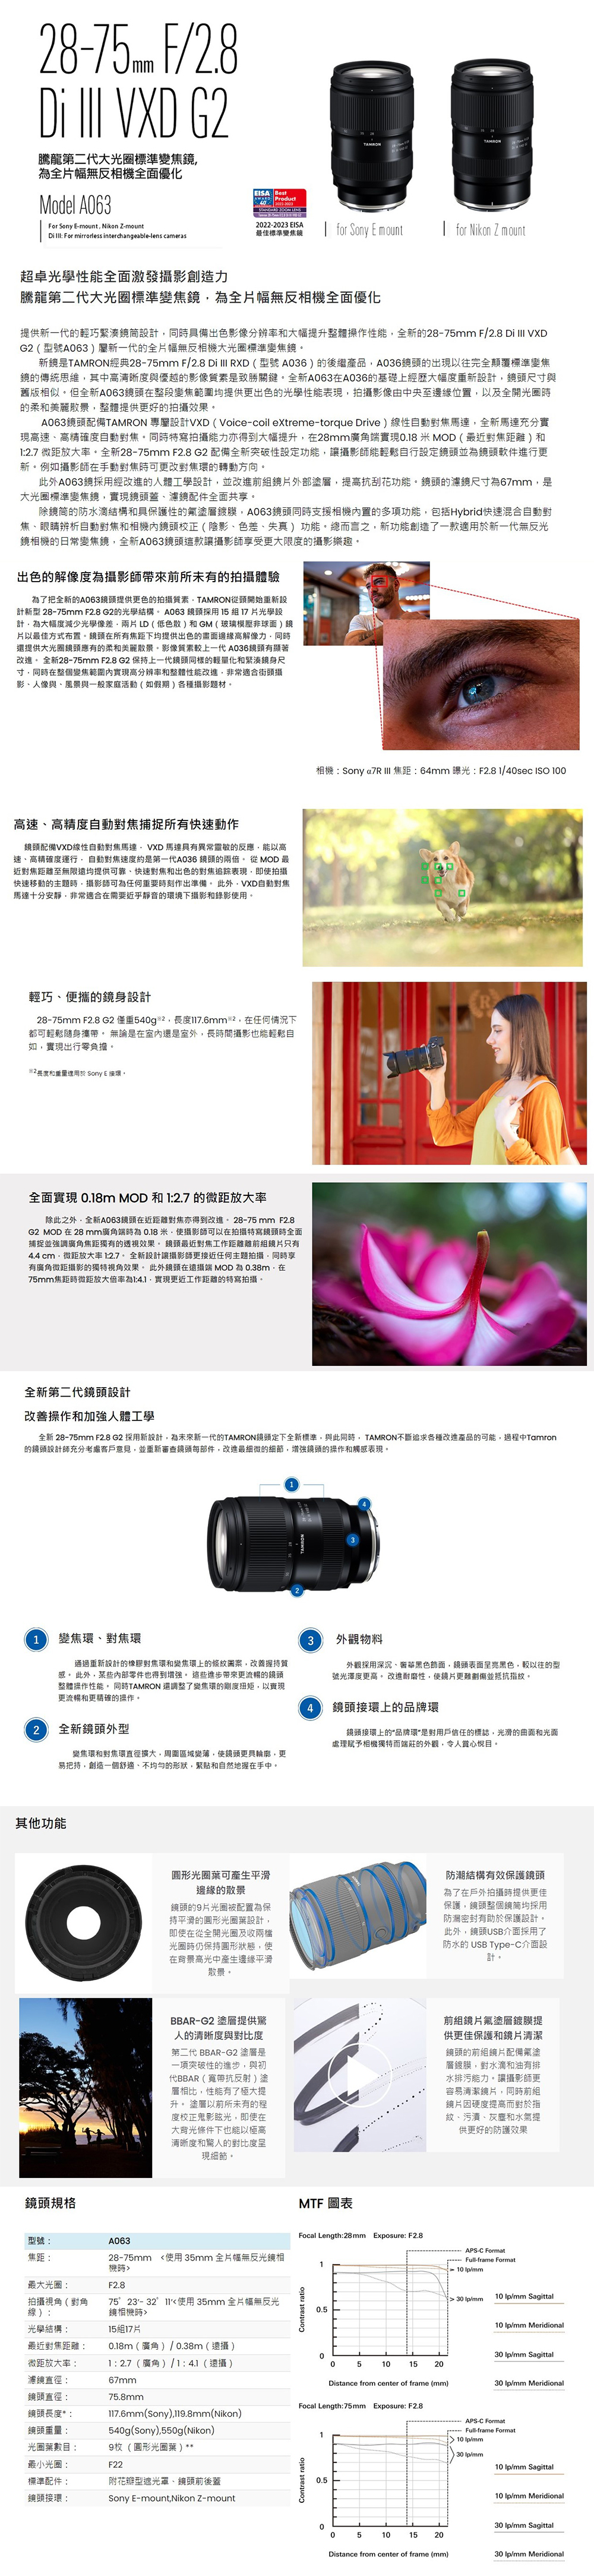 F/28  VXD G2sĤGNjзܵJTLϬ۾uModel A63For Sony E-mount Nikon Z-mountEISA Best Product4222 223STANDARD  TAMRONTAMRON2022-2023 EISĄμзܵJ for Sony E mountfor Nikon Z mountDi  For mirrorless interchangeable-lens camerasWǩʯEovгyOsĤGNjзܵJ謰TLϬ۾uƴѷs@N]pPɨƥXvvMjTɾާ@ʯs28-75mm F/2.8 Dilll VXDG2(A063ݷs@NTLϬ۾jзܵJsOTAMRONg28-75mm F/2.8 Di  RXD(A036)~~A036YX{HAмзܵJ誺ǲΫ䤤M׻PuVvOPsA063A036¦WgjT׭s]pYؤoPªۦsA063YbqܵJd򧡴ѧX⪺ǩʯ{vѤtmHΥ}ɪXMR鴣ѧnĪGA063YtTAMRON Mݳ]pVXD (Voice-coil extreme-torque Drive)uʦ۰ʹJFsFR{tTצ۰ʹJCPɯSgOojTɦb28mmsݹ{0.8MOD(̪JZ)M2.7 LZjvCs28-75mm F2.8 G2 tƥs}ʳ]w\vv໴Pۦ]wYìYnisCҦpvvbʹJɥiJʤVC~A063ĥθgiHuǳ]pçie~hܨ\CYoؤo67mmOjзܵJ,{Y\ot@ɡC赩wcMO@ʪhὤ,A063YPɤ䴩۾mh\,]AHybridֳtVX۰ʹJR۰ʹJM۾Yե(vBtBu)\C`Ө,s\гyF@کs@NLϥ۾`ܵJ,sA063YovvɨjתvֽCX⪺ѹ׬vvaӫeҥ笰FsA063Yѧ⪺,TAMRONqY}ls]ps 28-75mm F2.8 G2ǵcC A063 Yĥ517ǳ]p,jT״֥ǹt,LD(Cⴲ)MGM(Dy)H̨Τ覡mCYbҦJZUѥX⪺etѹO,PɴѤjYXMRCvW@NA036YۧiC s28-75mm F2.8 G2 OW@NYP˪qƩM設ؤo,PɦbܵJd򤺹{vMʯi,D`AXYvBHPBP@ax(p)UvDCtBצ۰ʹJҦֳtʧ@YtVXDuʦ۰ʹJF,VXD F㦳`FӪ,HtBT׹B,۰ʹJt׬OĤ@NA036Y⭿CqMOD̪JZܵLѥiaBֳtJMX⪺Jl踪{,YϩֳtʪDD,vvi󭫭nɨ@XǳơC~,VXD۰ʹJFQwR,D`AXbݭnGRҤUvMvCBK⪺設]p28-75mm F2.8 G2 ȭ540g,117.6mm²,b󱡪pUiPHaC L׬ObǤ٬Oǥ~,ɶv]໴Pۦp,{XstC2שMqAΩ Sony E C{ 0.18m MOD M 12.7 LZjv~,sA063YbZJoiC28-75mm F2.8G2 MODb28mmsݮɬ 0.18,vviHbSgYɥñjռsJZWzĪGC Y̪Ju@Zeu4.4 cm,LZjv12.7Cs]pvv󱵪DD,PɨɦsLZvWSĪGC~Yb MOD 0.38m,b75mmJZɷLZjv14.1.{u@ZSgCsĤGNY]pﵽާ@M[jHuǬ۾:Sony a7R  JZ: 64mm n: F2.81/40sec ISO 100s 28-75mm F2.8 G2 ĥηs]p,ӷs@NTAMRONYwUsз,PP,TAMRON_lDUاi~i,L{TamronY]pvRҼ{ȤN,ísfdYC,i̲ӷLӸ`,WjYާ@MĲP{C1ܵJBJqLs]p󽦹JMܵJWϮ,ﵽPC ~,YǤs]oWjCoǶiBaӧyZYާ@ʯC PTAMRON ٽվFܵJקx,H{yZMTާ@C2sY~ܵJMJ|Xj,Pϰ,Y,,гy@ӵξABêΪ,KM۵Mab⤤CL\YW3~[ƥ~[ĥβ`IBض¦⹢,YeG¦,HAק󰪡C i@i,˨éܫC4YW~PYW~POΤHлx,ƪMBzᤩ۾WSӺݲ~[,OH߮ءCΥiͥtY9QtmOƪΥ鸭]p,YϦbq}ΦɥɤOΪA,ϦbItƴC鵲cīO@YFb~ɴѧΫO@,Y赩ĥΨ|KʦUO@]pC~,YUSBĥΤF USB Type-C]pCBBAR-G2 hHM׻PײĤGN BBAR-G2hO@}ʪiB,PNBBAR(eaܤϮg)hۤ,ʯ঳FjɡC hHeҥ{׮եvt,YϦbjIU]HMשMHקe{Ӹ`CehὤѧΫO@MMYetƬthὤ,wMoƤƦïOCvveM,Pɫe]w״ӹBú{BǹЩM𴣨ѧn@ĪGMTF ϪFocal Length:28mm Exposure: F2.8:A063APS-C FormatJZ:̤j:(﨤F2.87523'-32Xϥ 35mm TLϥ28-75mm <ϥ 35mm TLϥ Full-frame Format110 /mmu):ǵc:۾>1517Contrast ratio10 /mm Sagittal>  /mm10 /mm Meridional̪JZ:LZjv:o誽|:Y|:Y*:Yq:0.18m(s)/0.38m()1:2.7(s)/1:4.1()67mm75.8mm117.6mm(Sony),119.8mm(Nikon)540g(Sony),550g(Nikon)鸭ƥ:9T(Υ鸭) **̤p:F22зǰt:äBnBYe\Y:Sony E-mount,Nikon Z-mount030 /mm Sagittal05101520Distance from center of frame (mm)30 /mm MeridionalFocal Length:75mm Exposure: F2.8APS-C Format1 Full-frame Format10 /mm30 /mmContrast ratio10 /mm Sagittal0.510 /mm Meridional030 /mm Sagittal05101520Distance from center of frame (mm)30 /mm Meridional